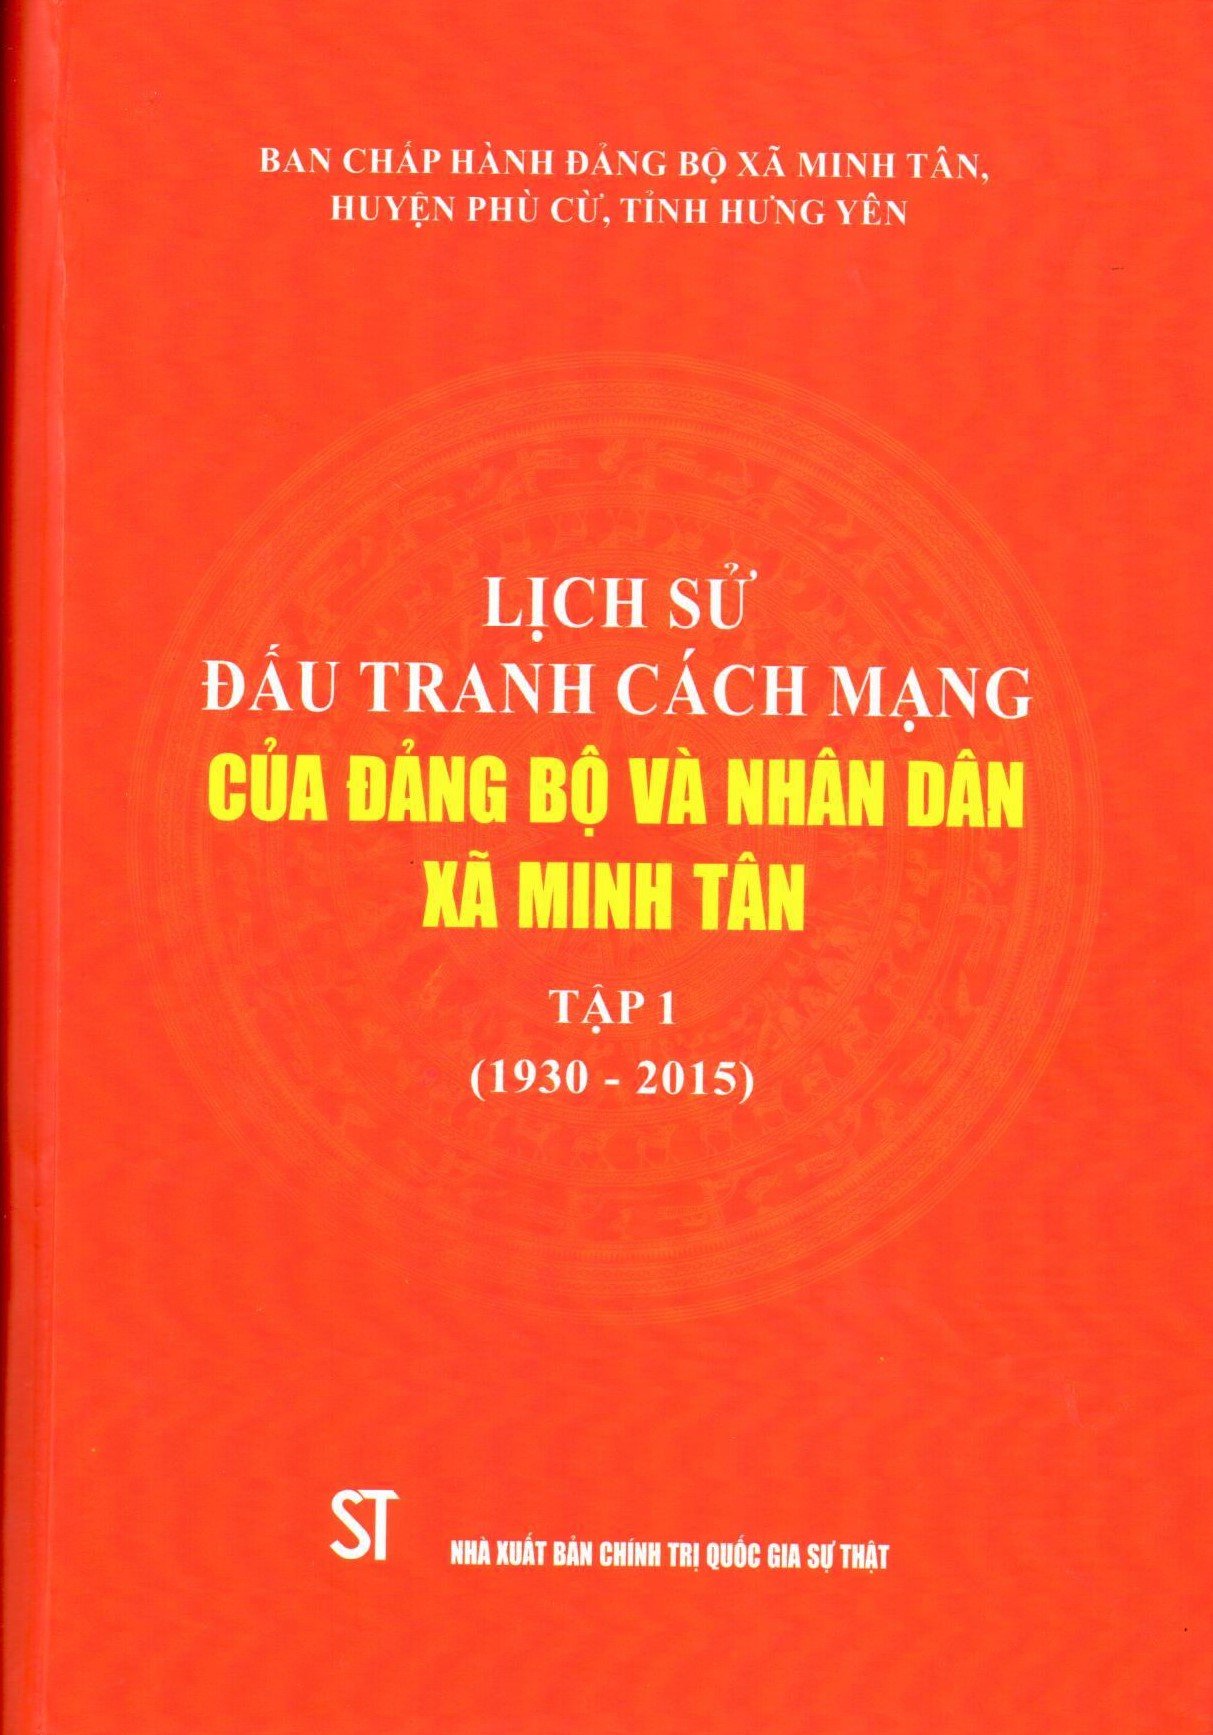 Lịch sử đấu tranh cách mạng của Đảng bộ và nhân dân xã Minh Tân, Tập 1 (1930 - 2015)